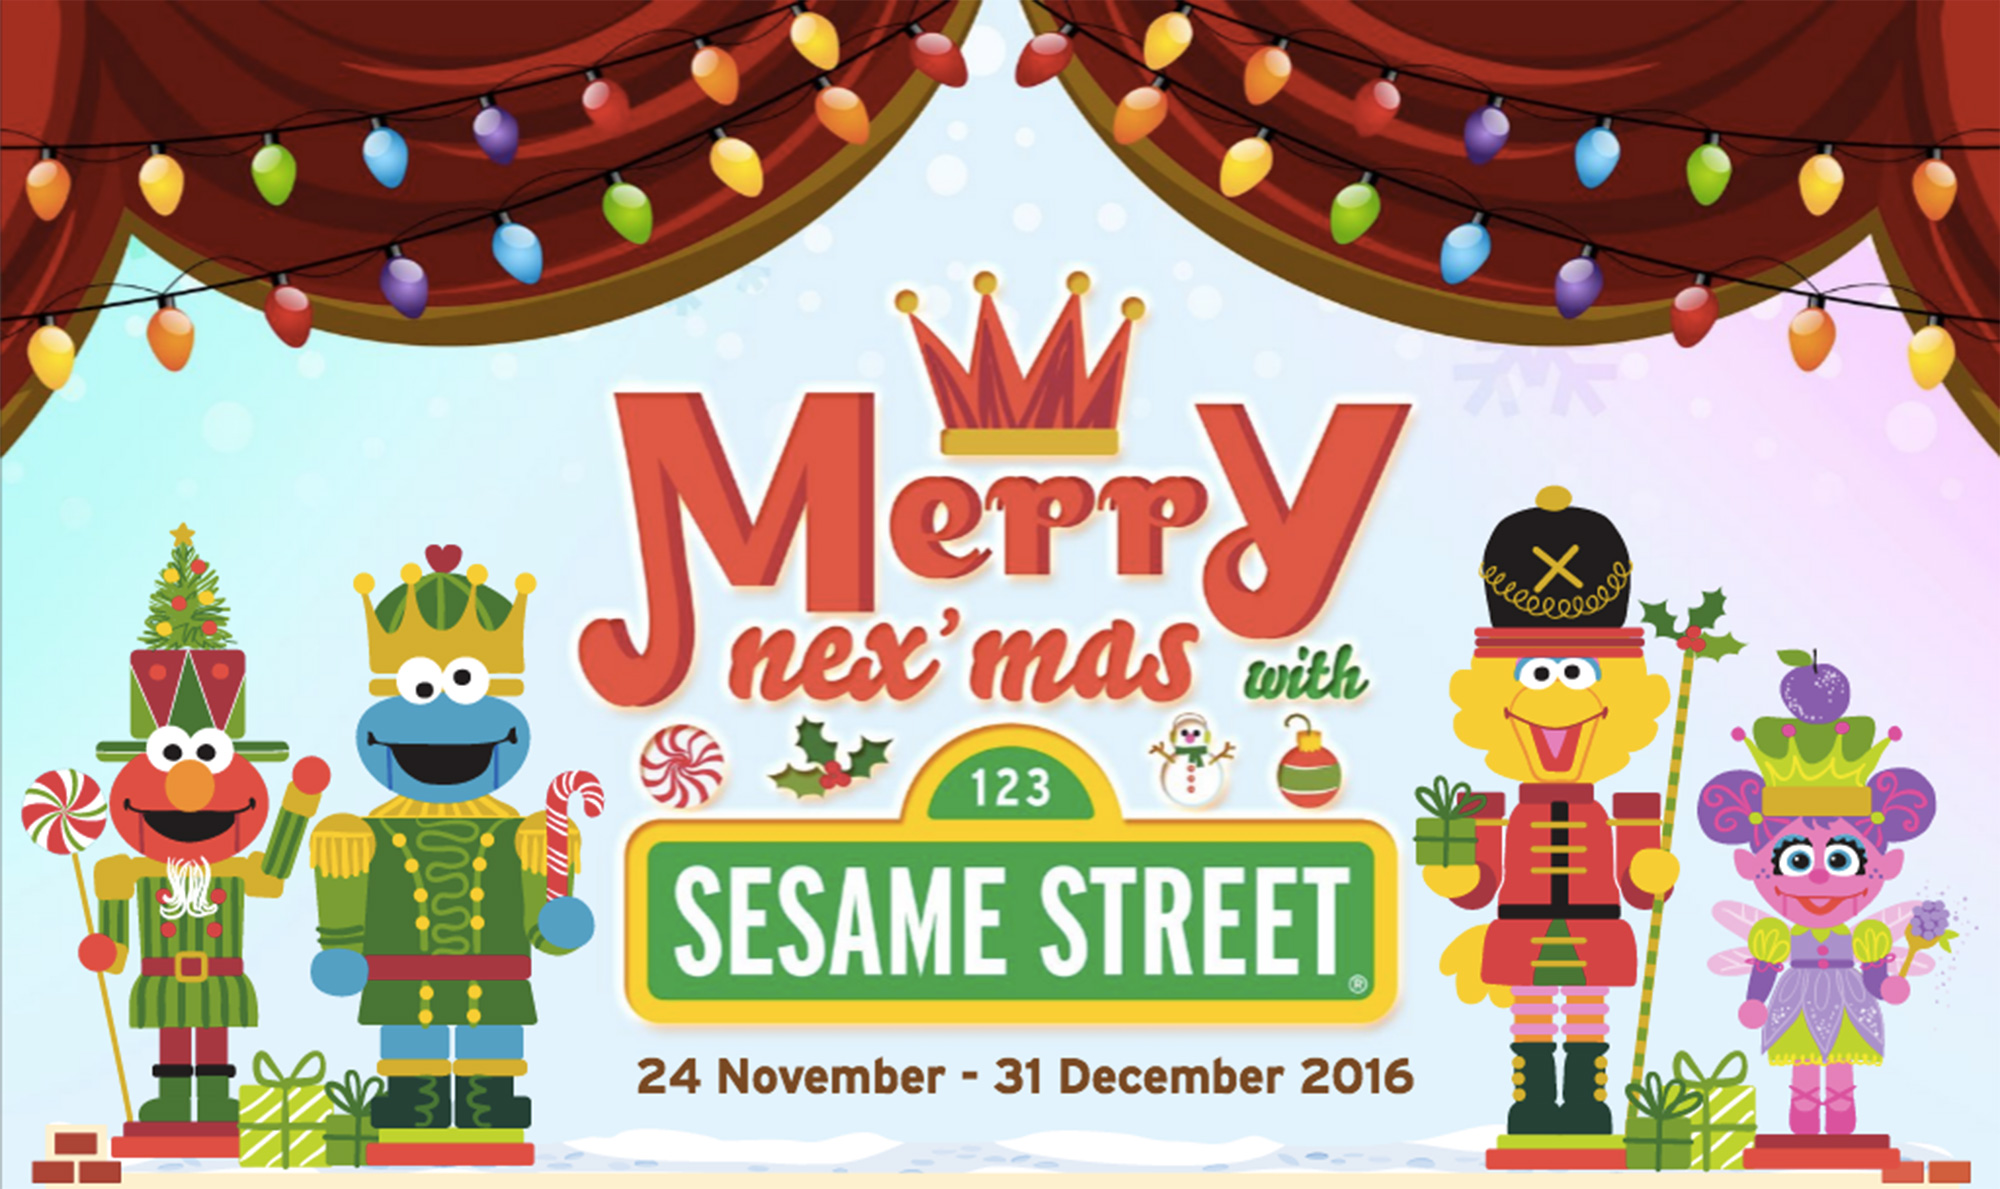 merry-nexmas-with-sesame-street_key-visual